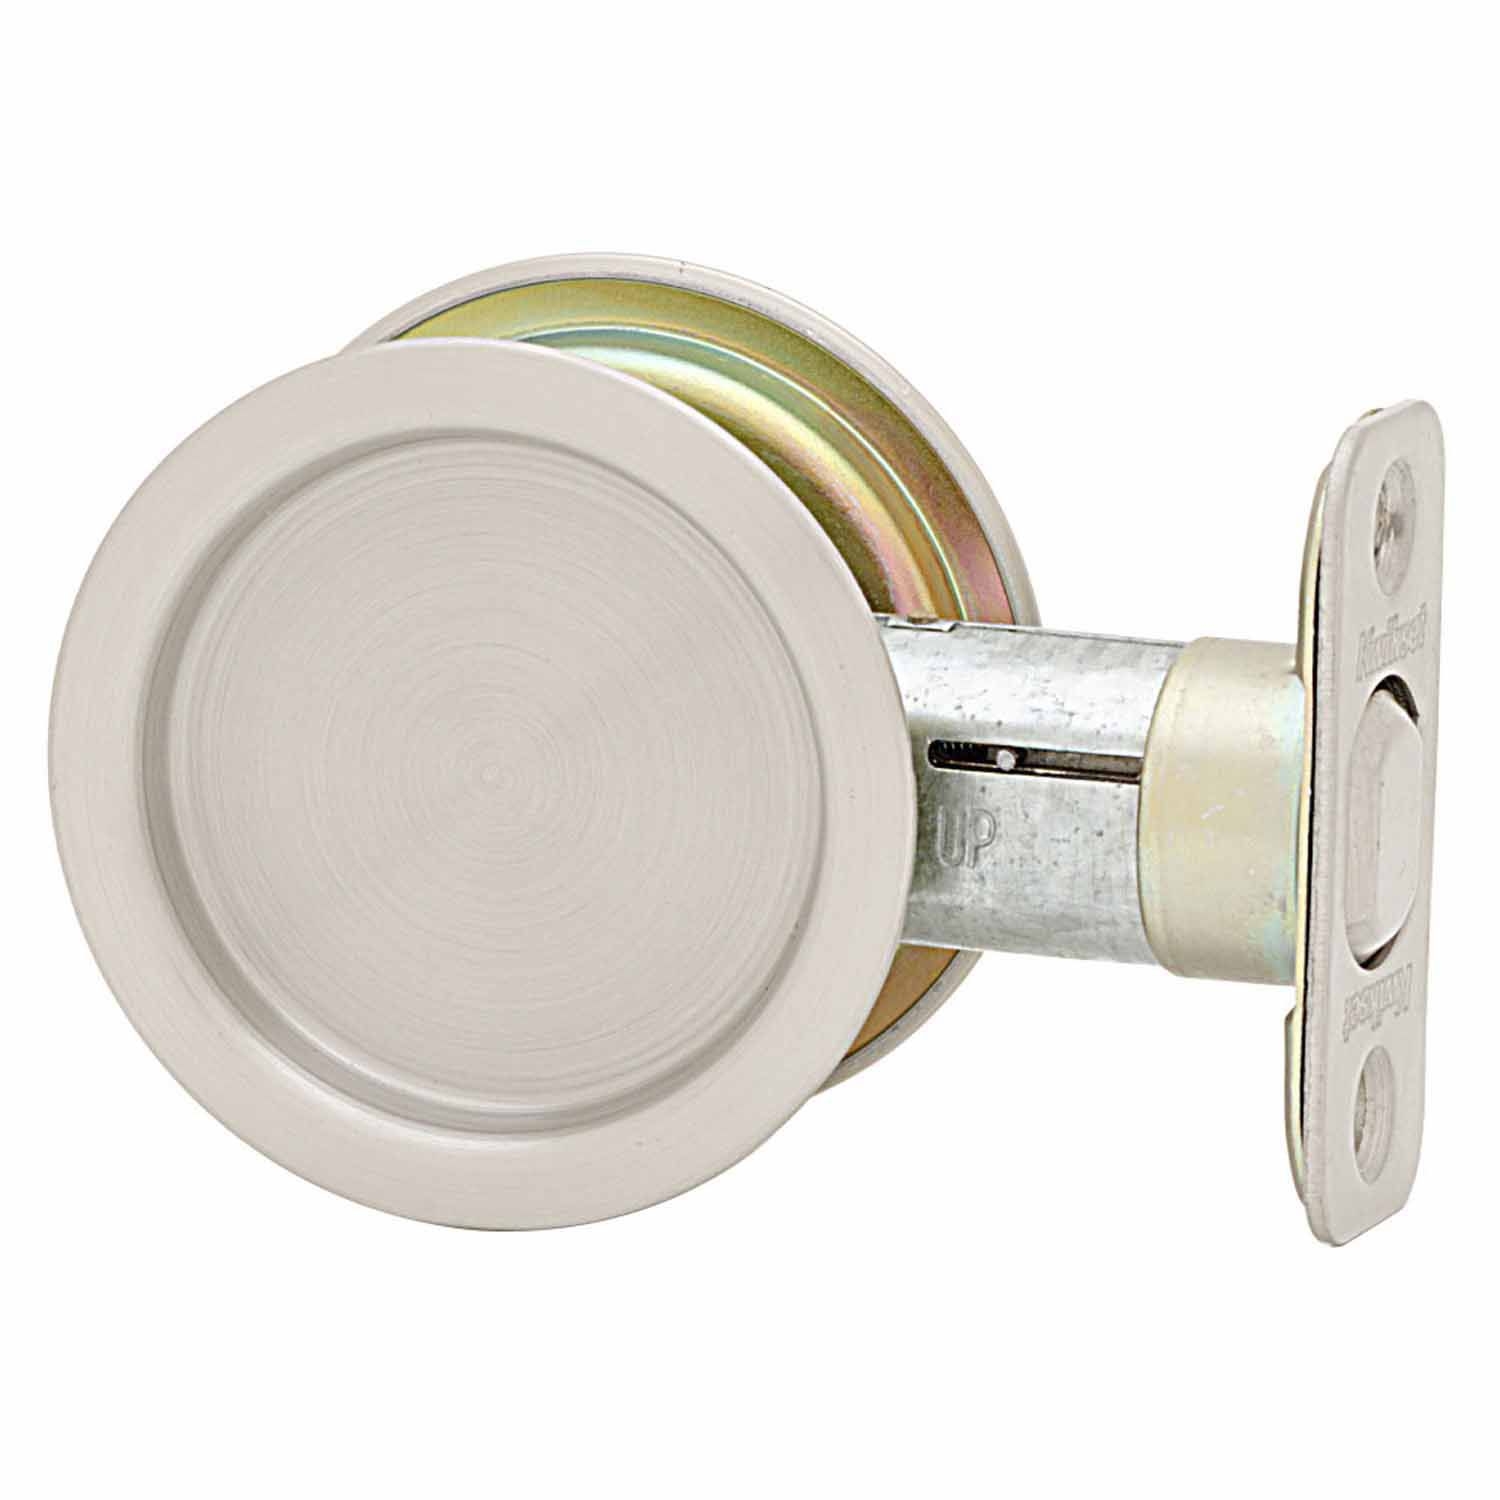 UPC 042049728613 product image for Kwikset Satin Nickel Metal Round Pocket Door Lock Indoor | upcitemdb.com